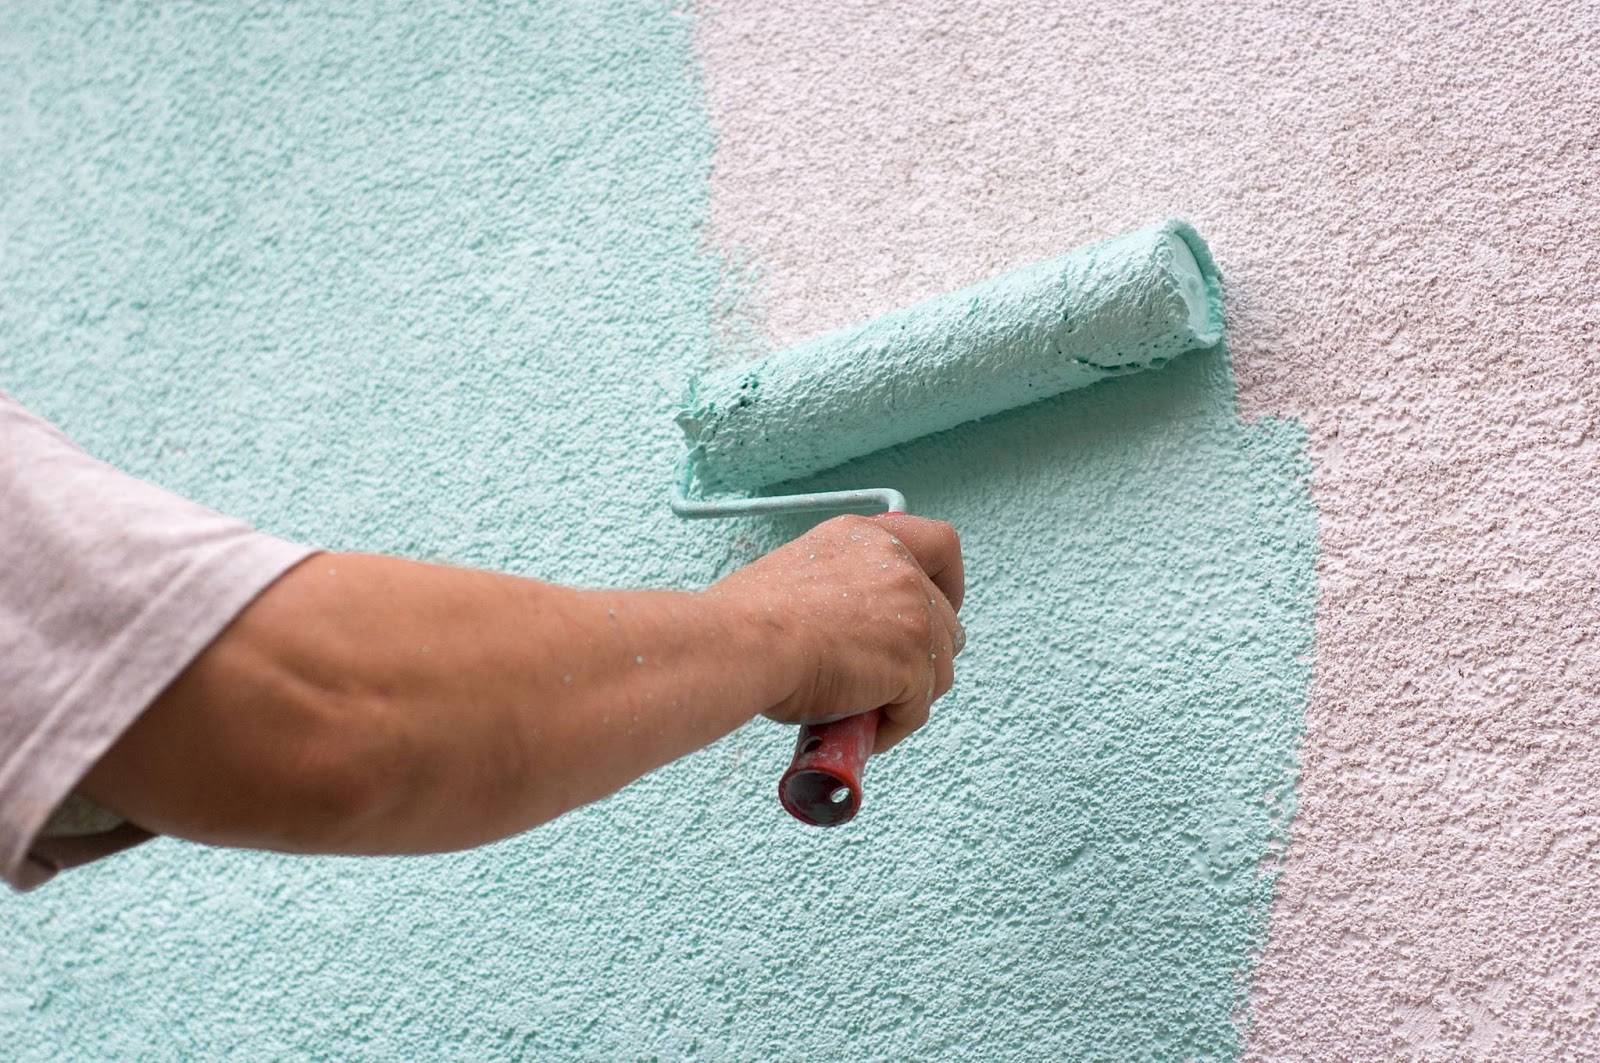 Фасадная краска по штукатурке для наружных работ: расход на 1м2 фасада, выбор окраски для внешних стен, покраска силиконовой, акриловой и другими типами, фото домов